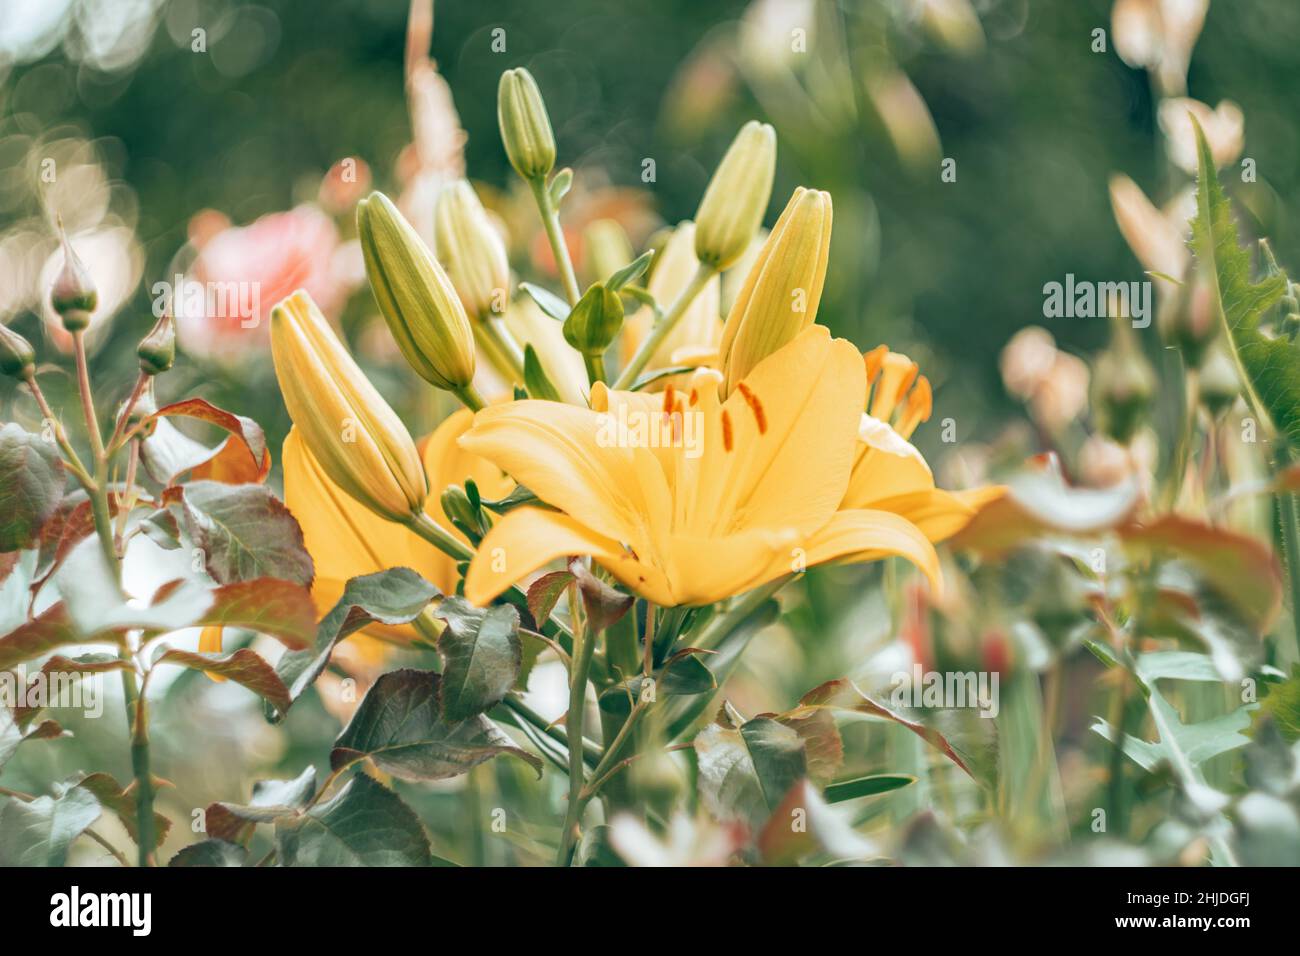 Primo piano immagine di fiore di giglio bianco e giallo con grandi petali aperti e timens e germogli OT-ibrido. Giorno mattina chiaro sfocato verde pianta liscia lasciare Foto Stock